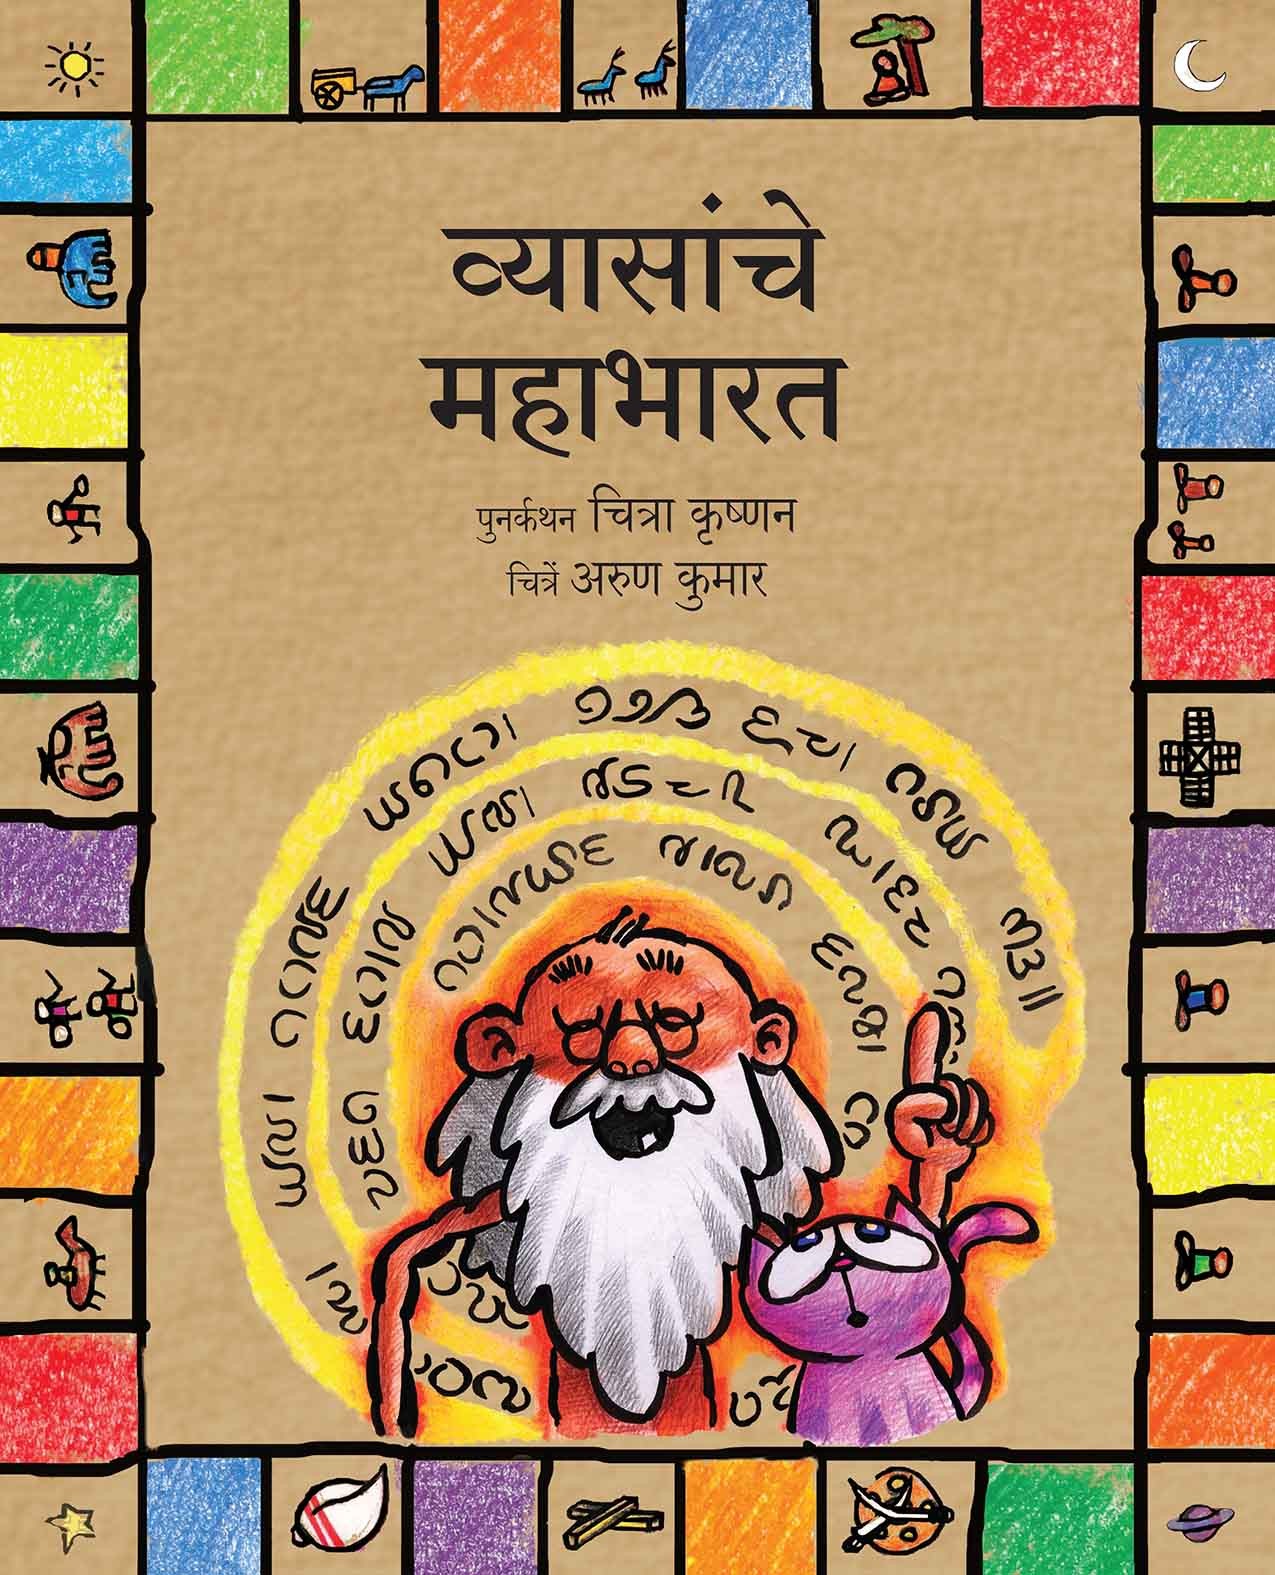 Vyasa's Mahabharata/Vyasanche Mahabharat (Marathi)